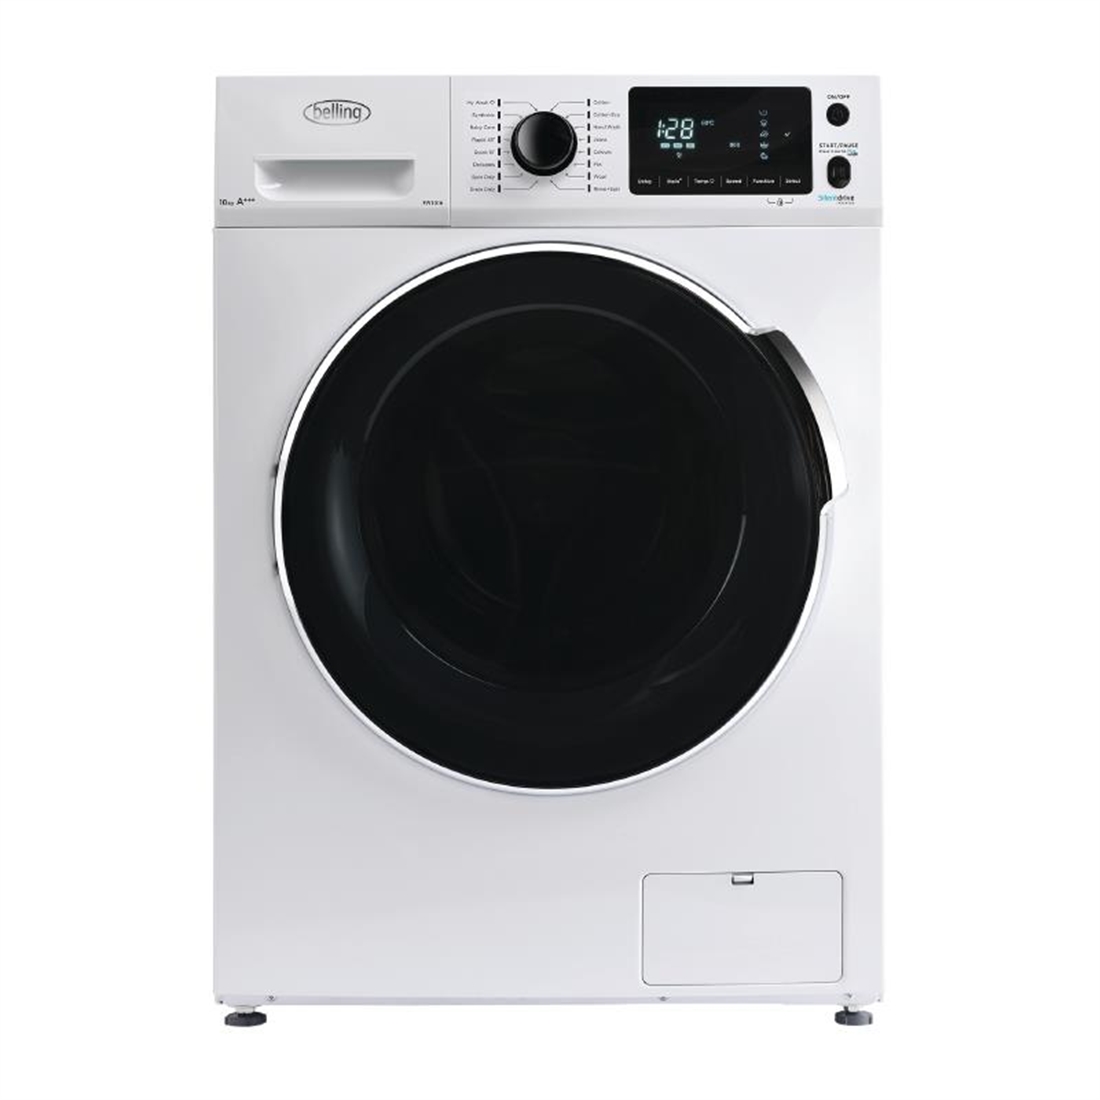 Belling Washing Machine White 10kg